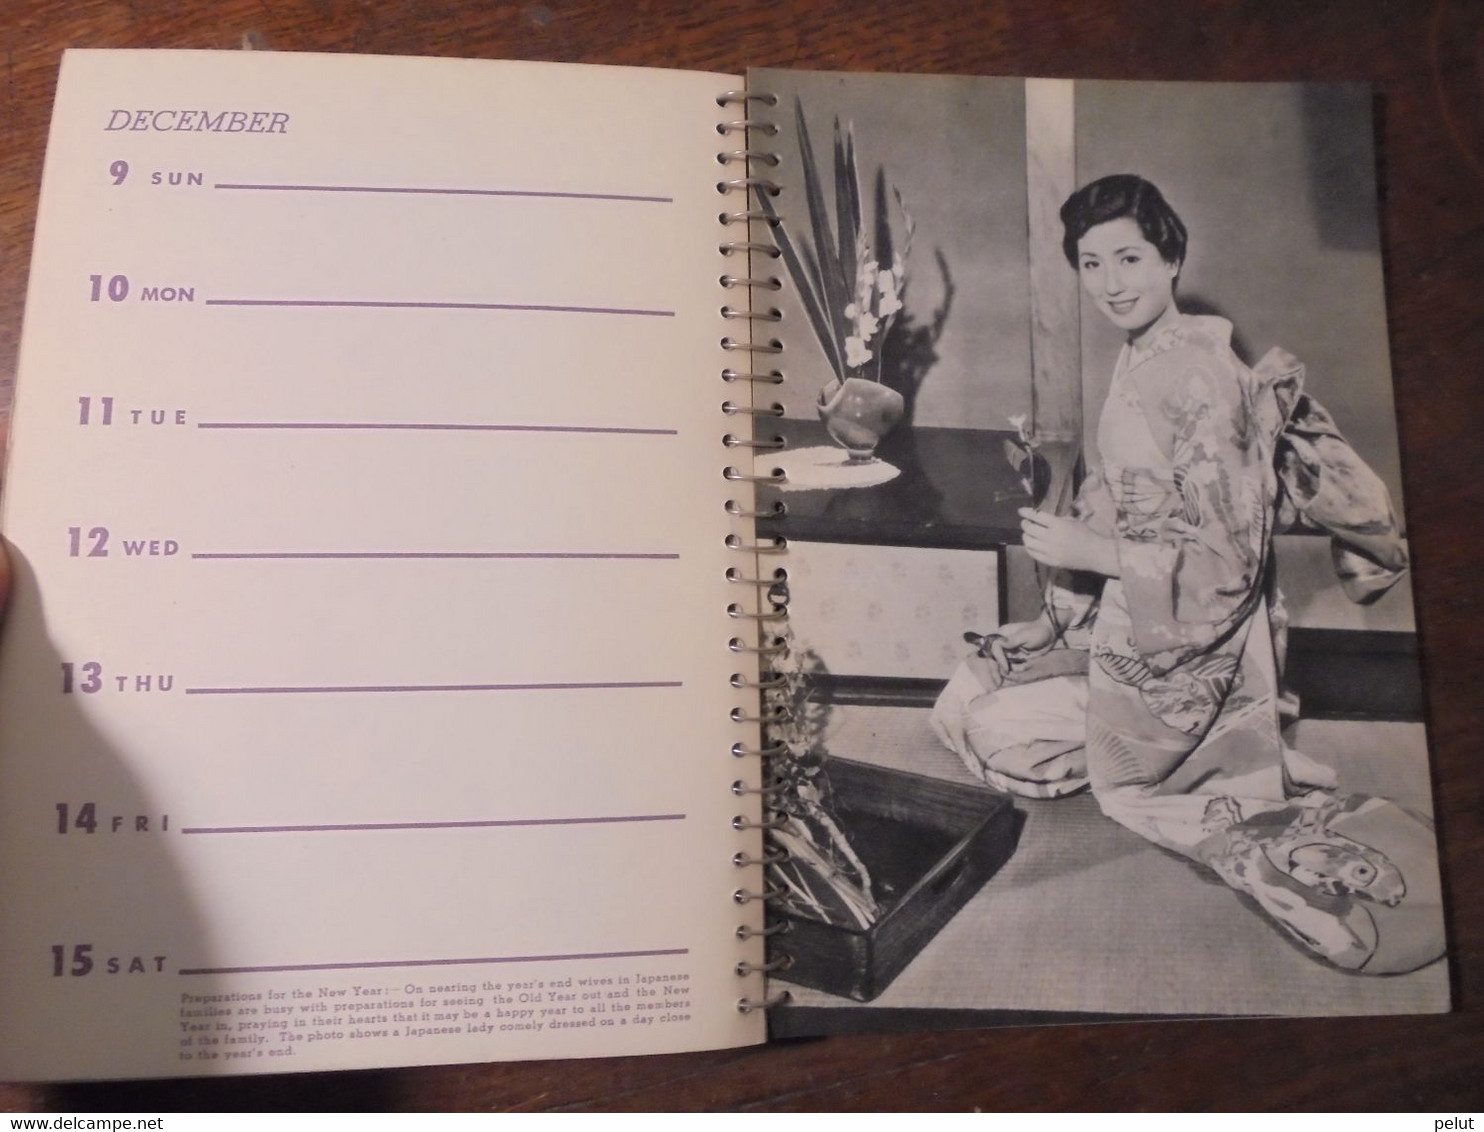 superbe calendrier-agenda Japon 1956 avec très belles photographies